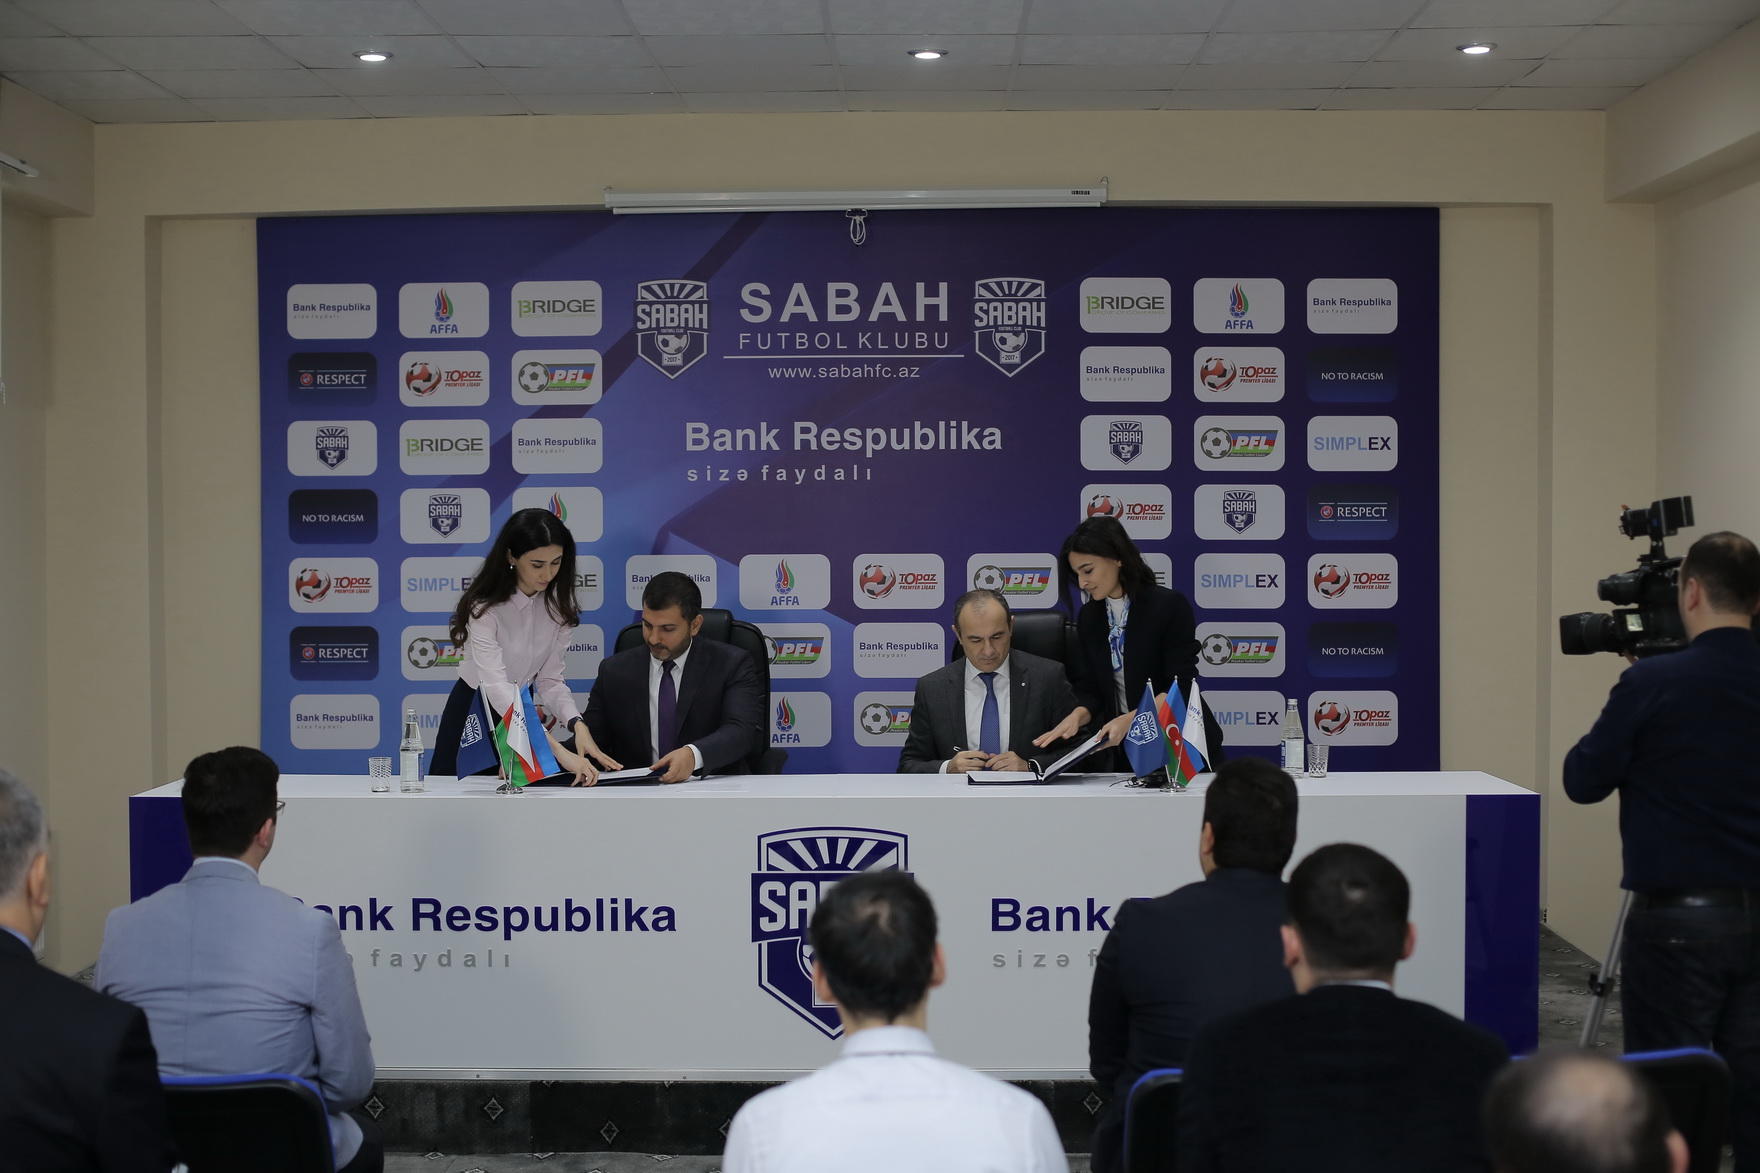 Bank Respublika və "Sabah" Futbol Klubu arasında sponsorluq müqaviləsi imzalanıb (FOTO)